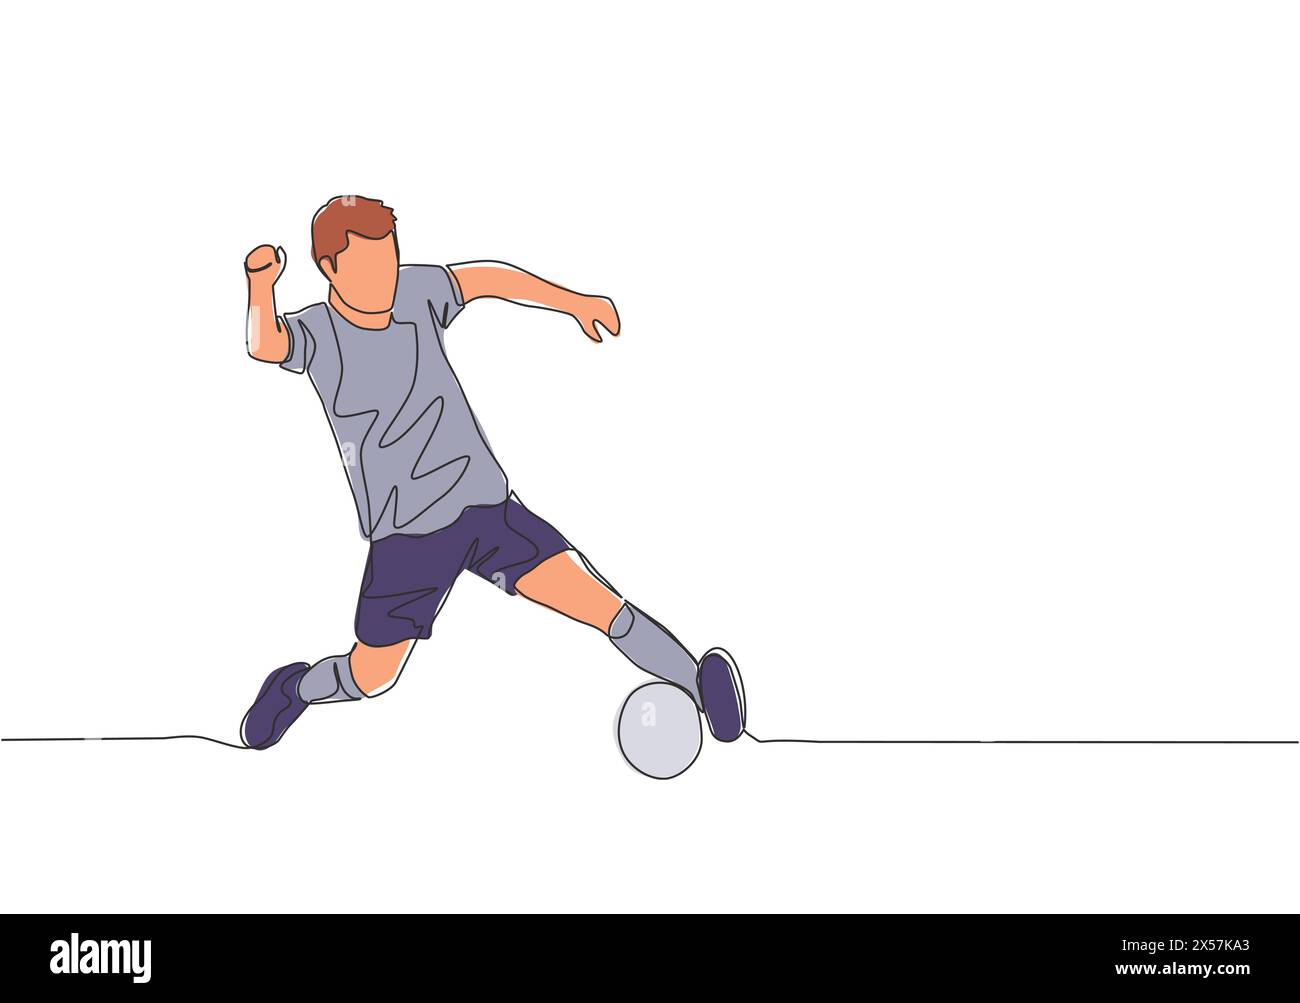 Eine einzelne Linienzeichnung eines jungen Fußballspielers mit Kurzarm-Trikot-Training zur Ballkontrolle. Fußballspiel Sportkonzept. Durchgehende Linie dr Stock Vektor